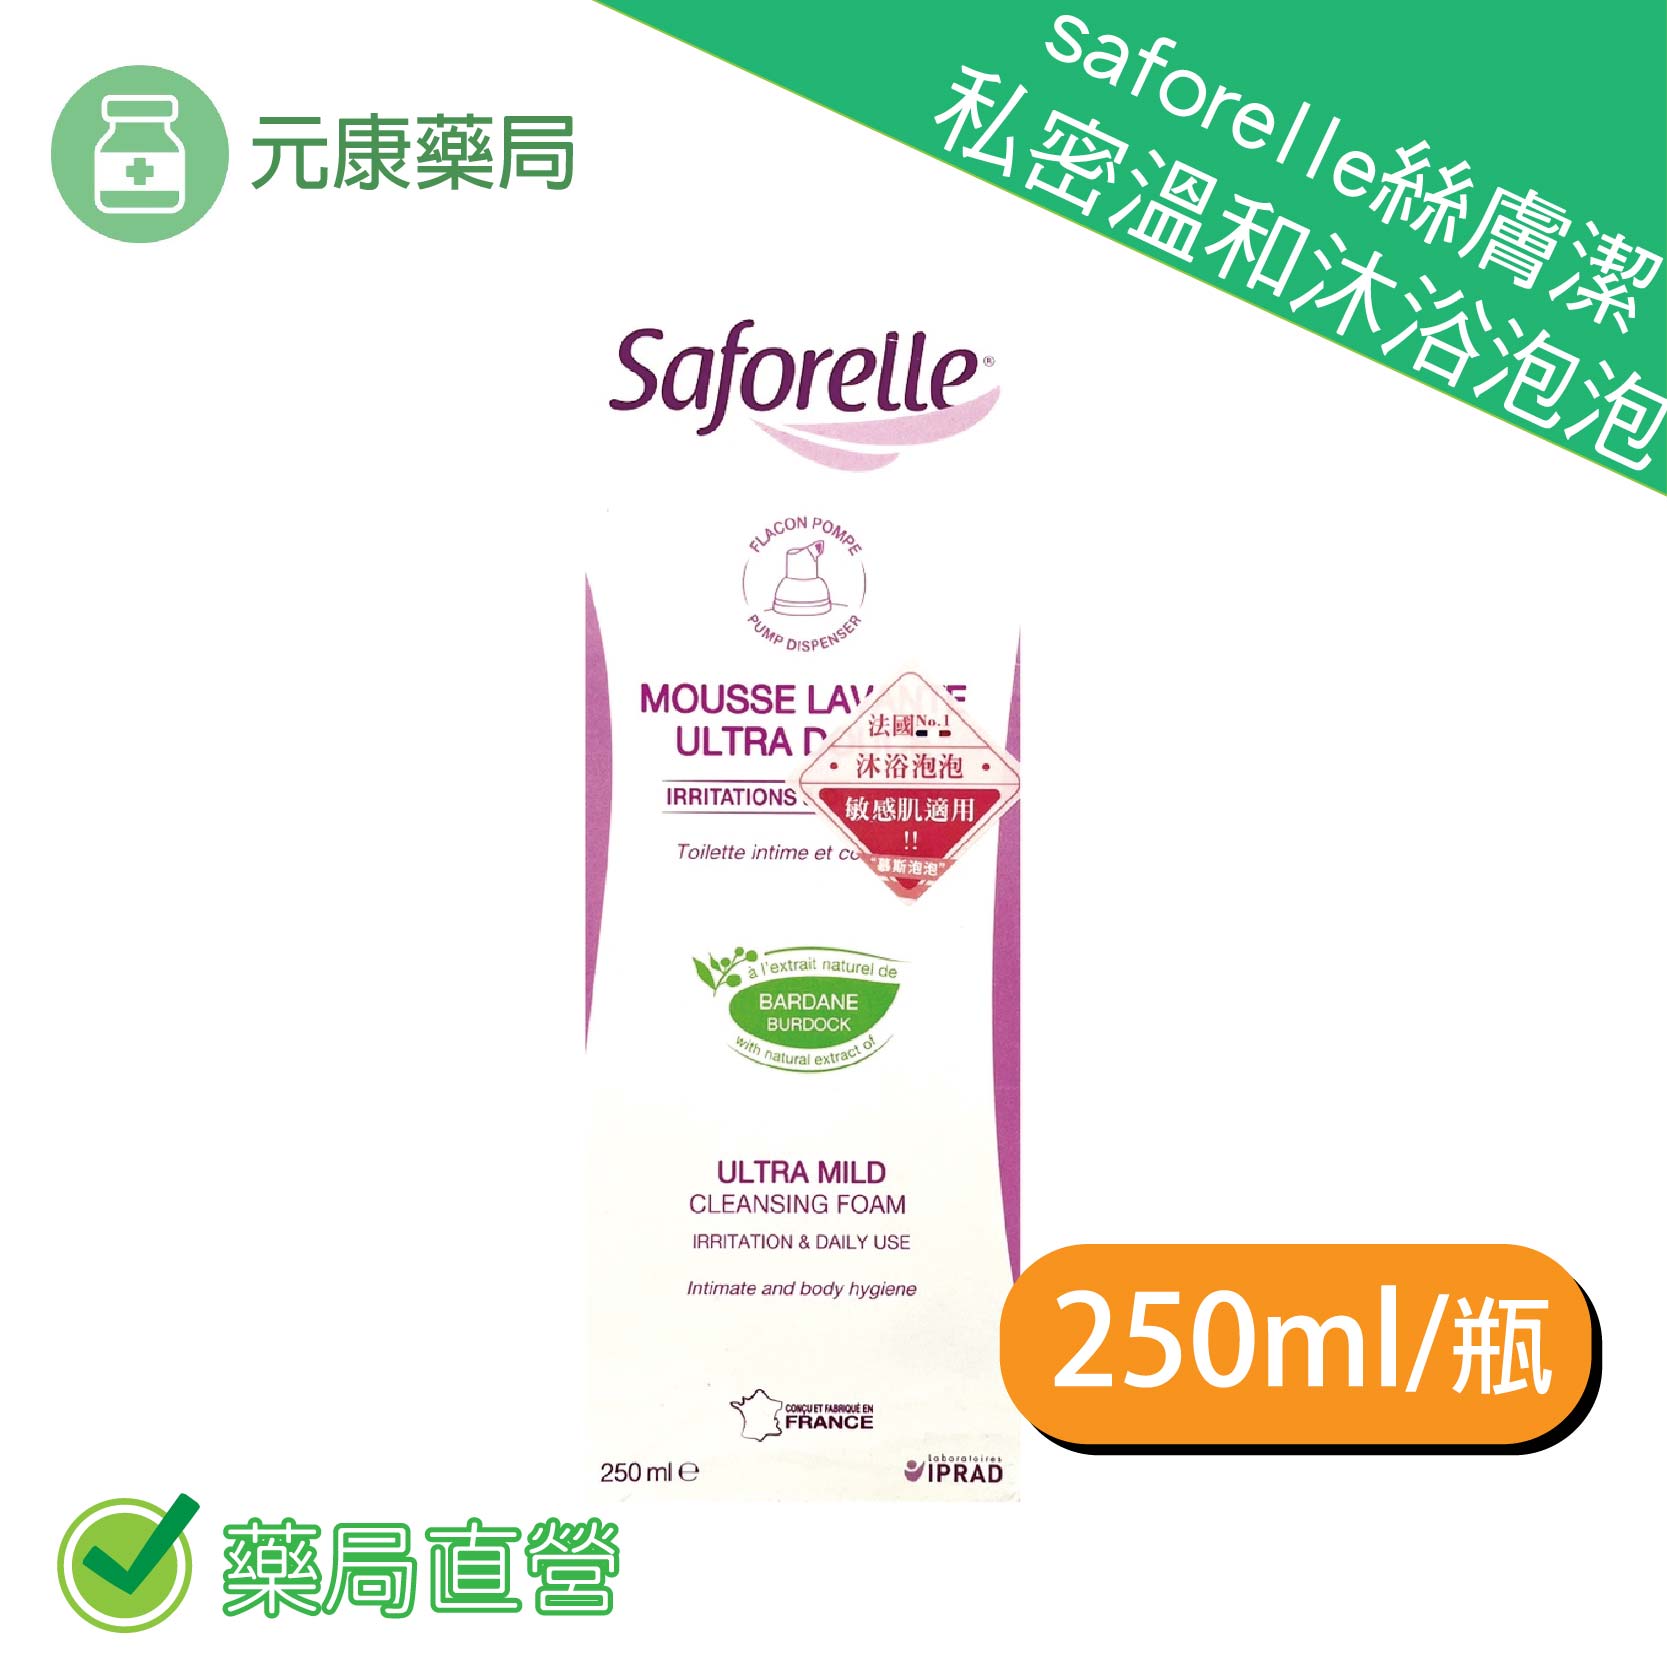 saforelle絲膚潔私密溫和沐浴泡泡 250ml 包裝隱密 安心購買